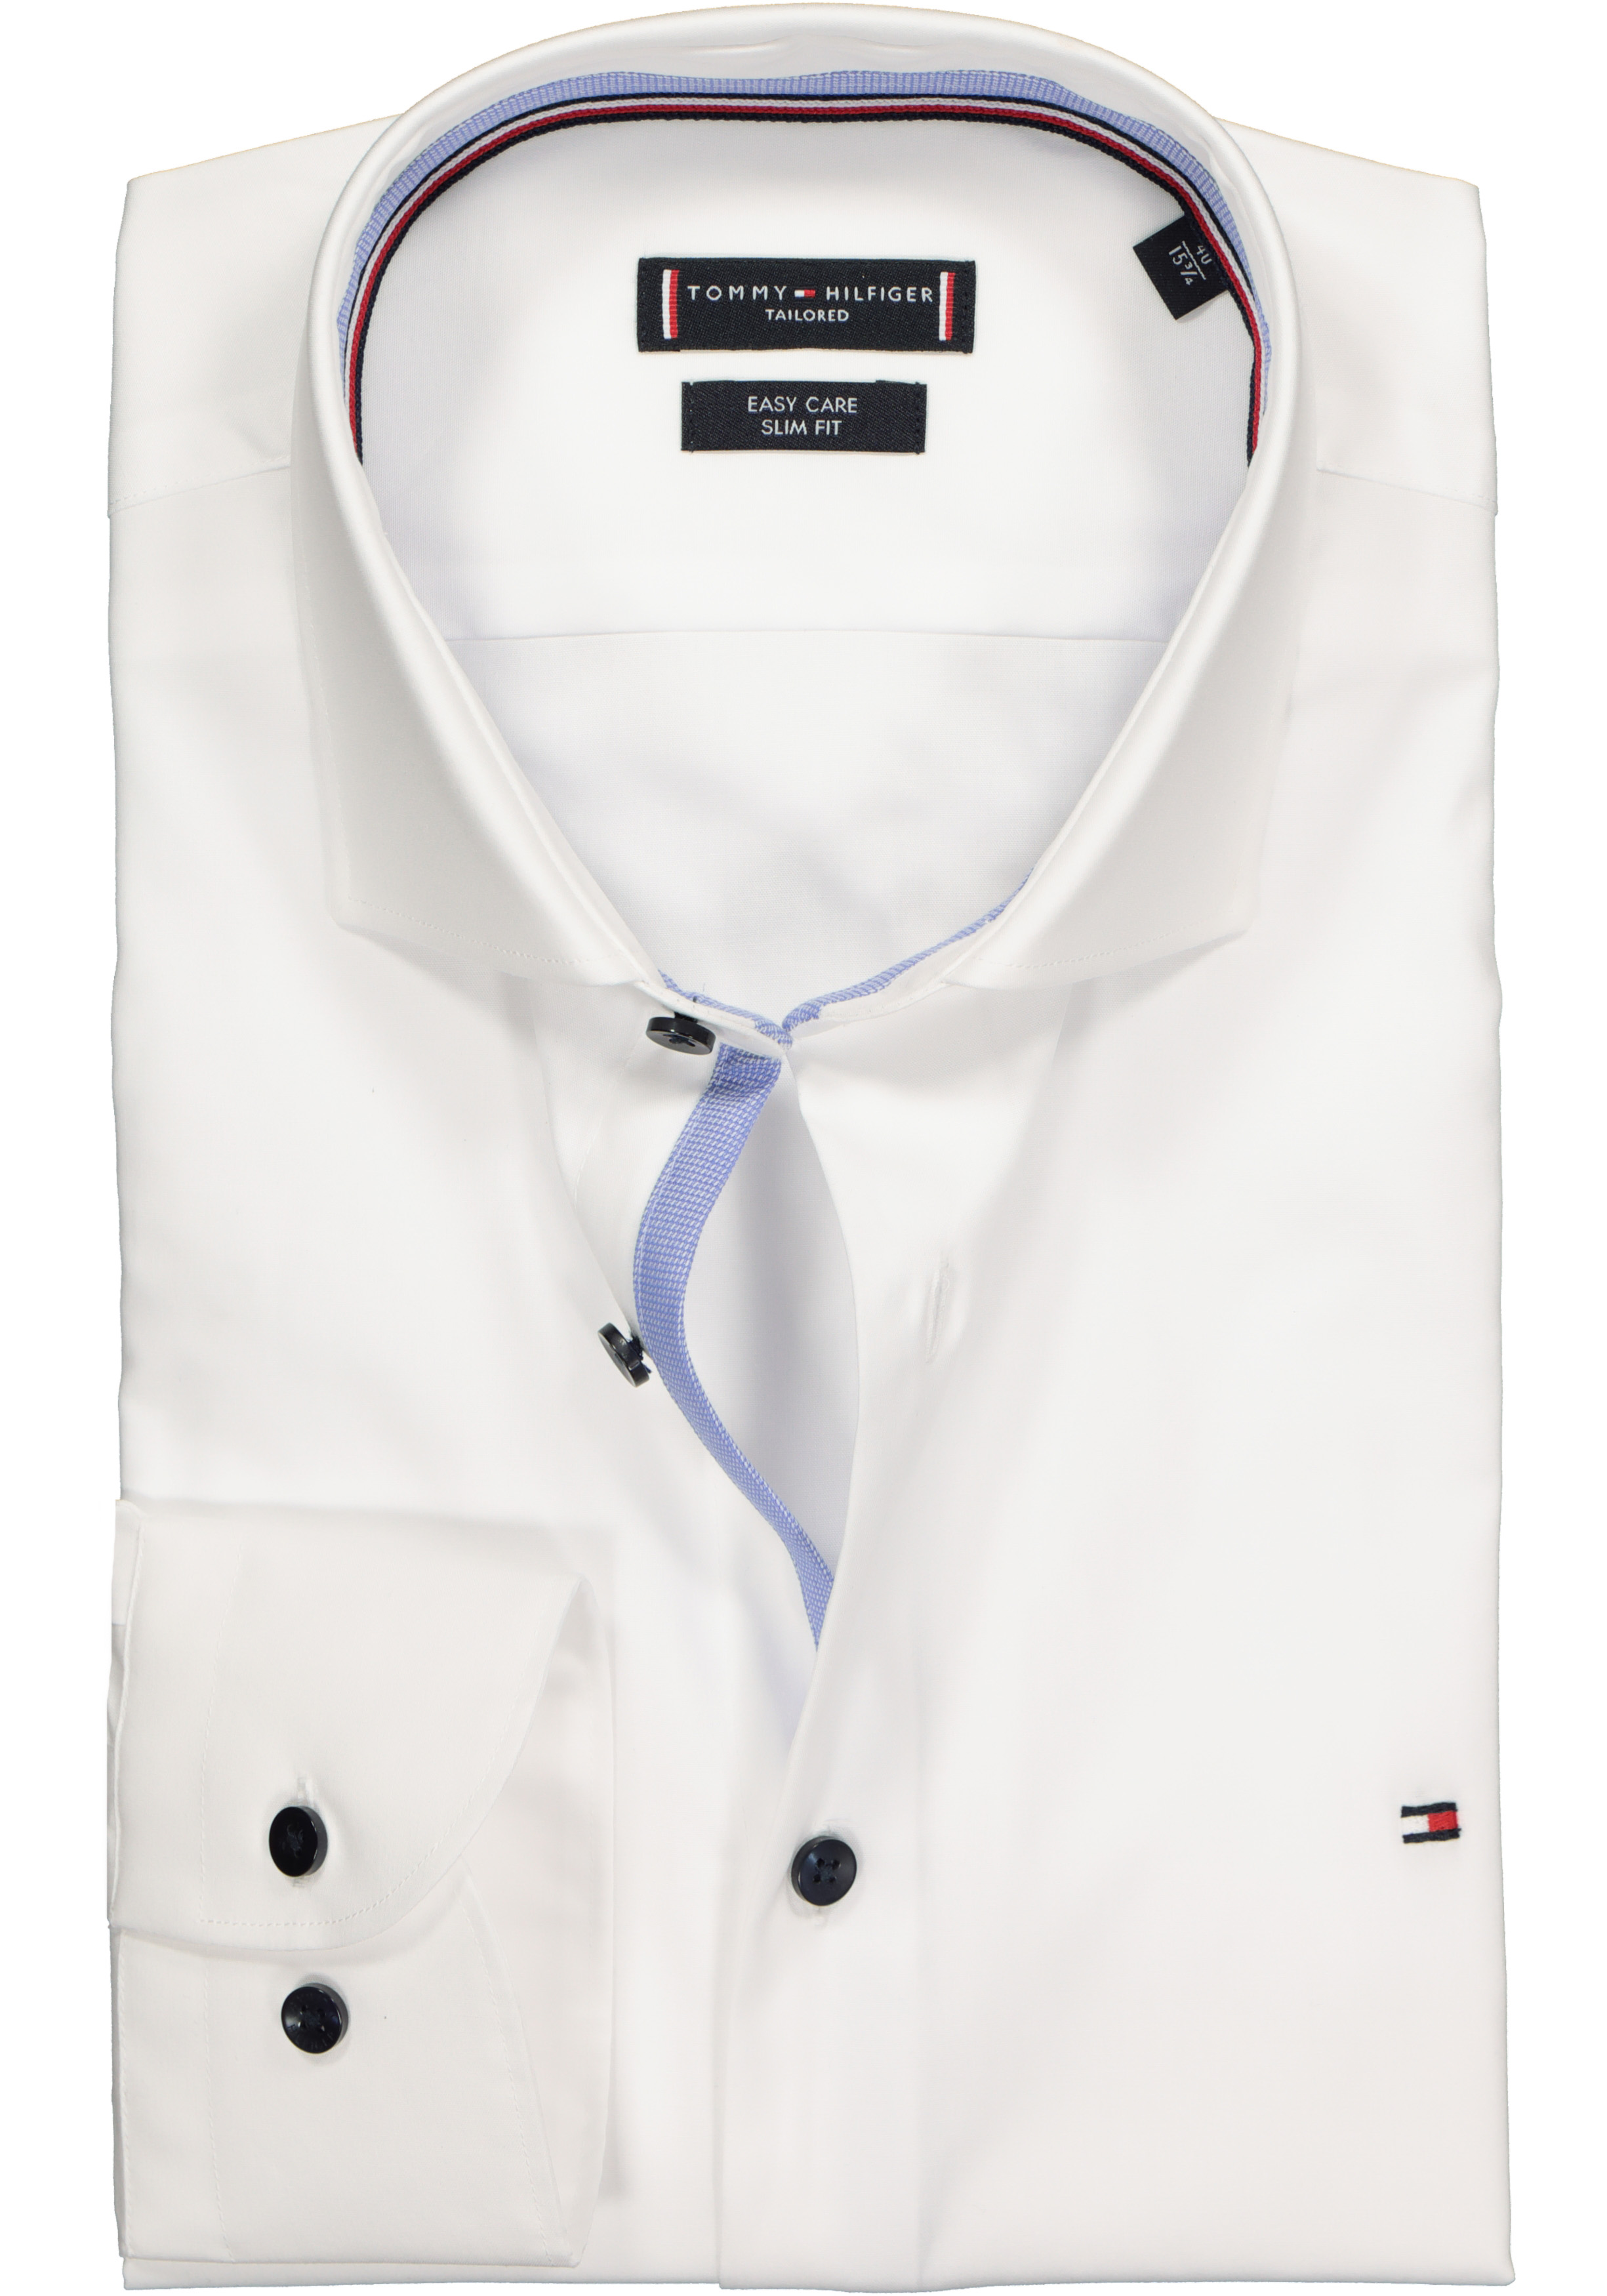 pk gelei regel Tommy Hilfiger Classic slim fit overhemd, wit (contrast) - Shop de nieuwste  voorjaarsmode